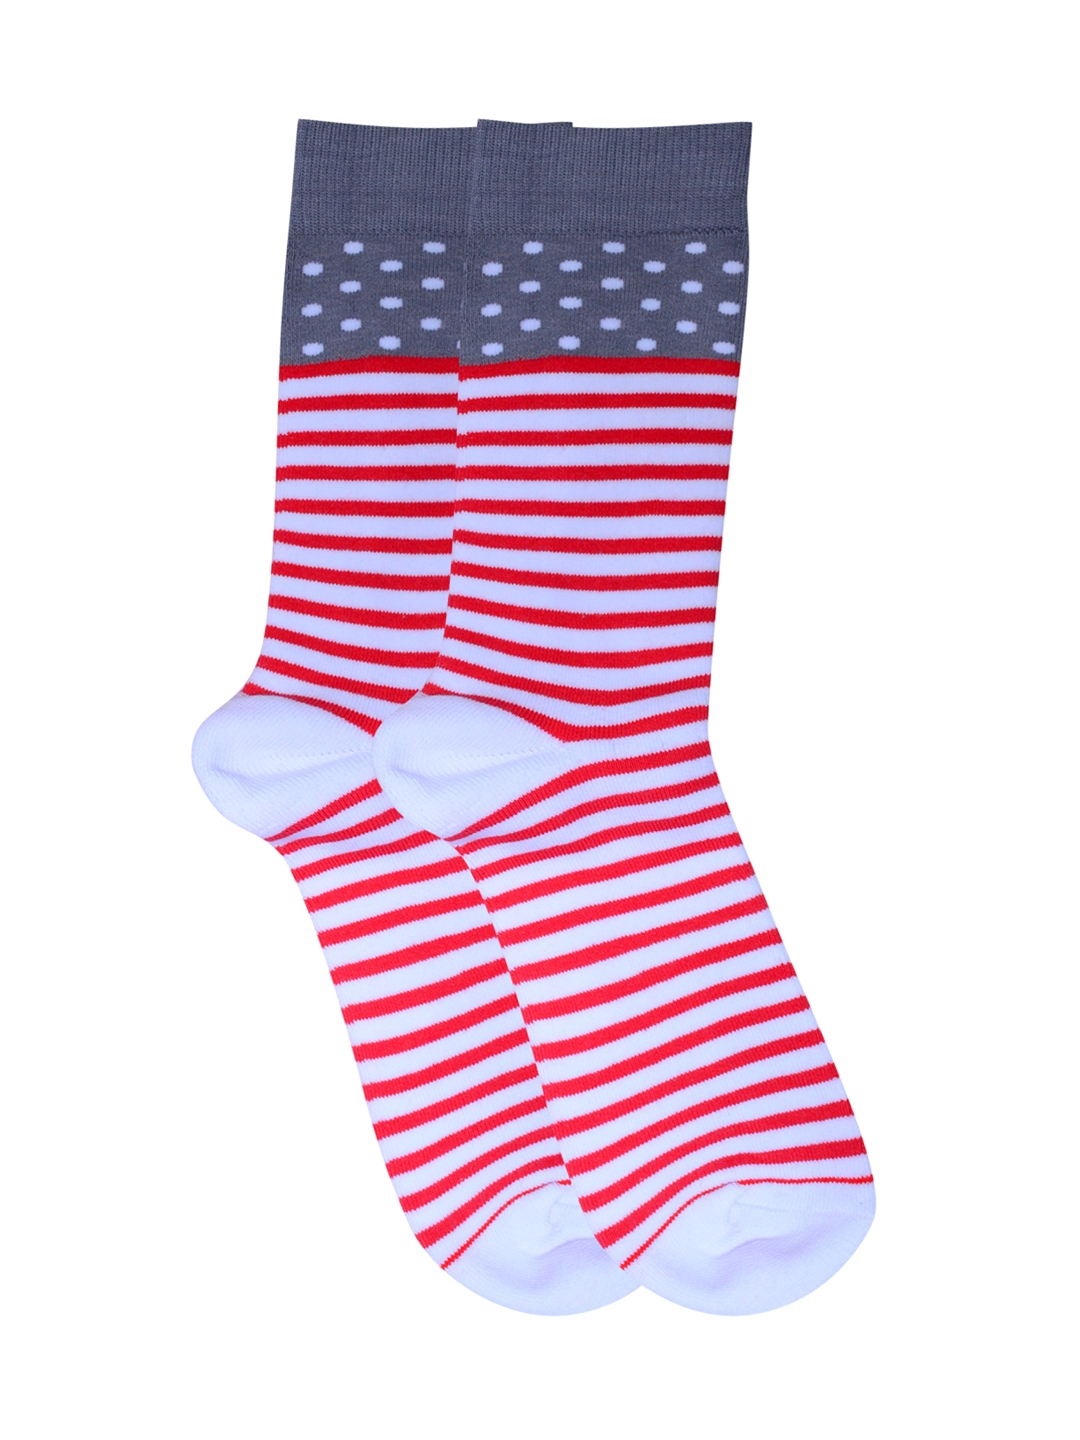 Buy Soxytoes Men White & Red Striped Socks - Socks for Men 5834325 | Myntra